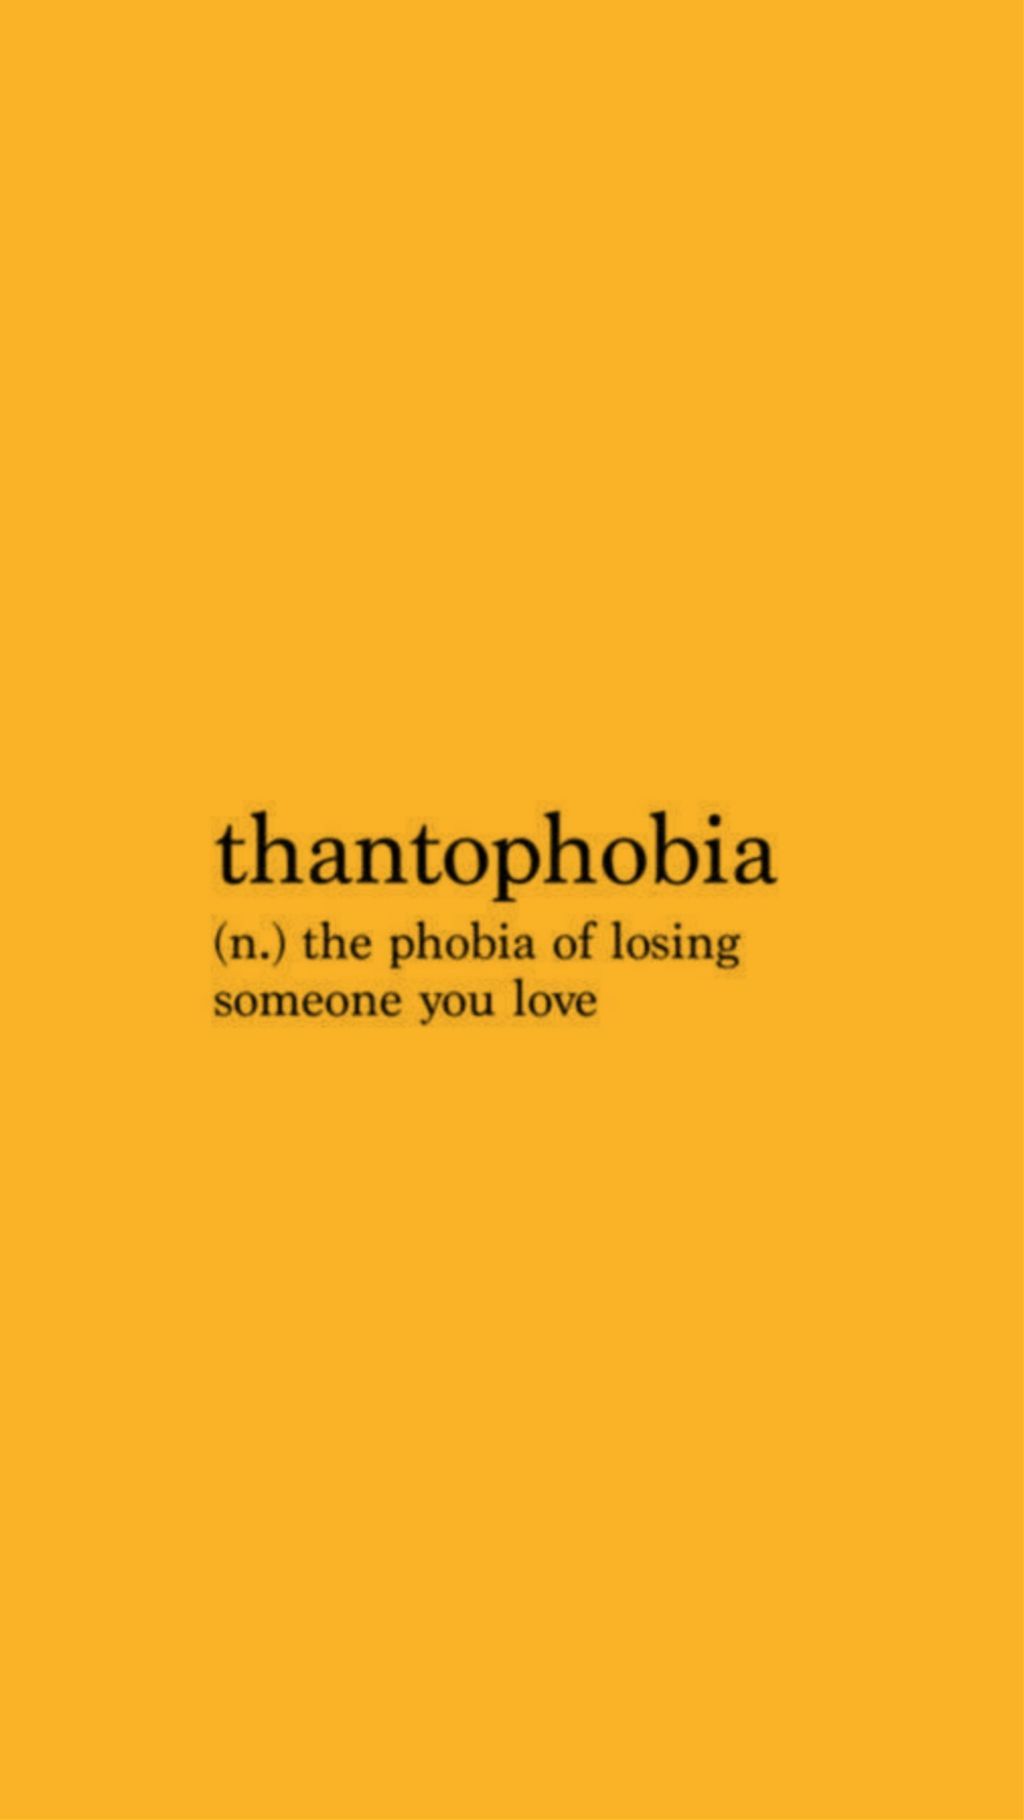 Thantophobia, Aesthetic Yellow